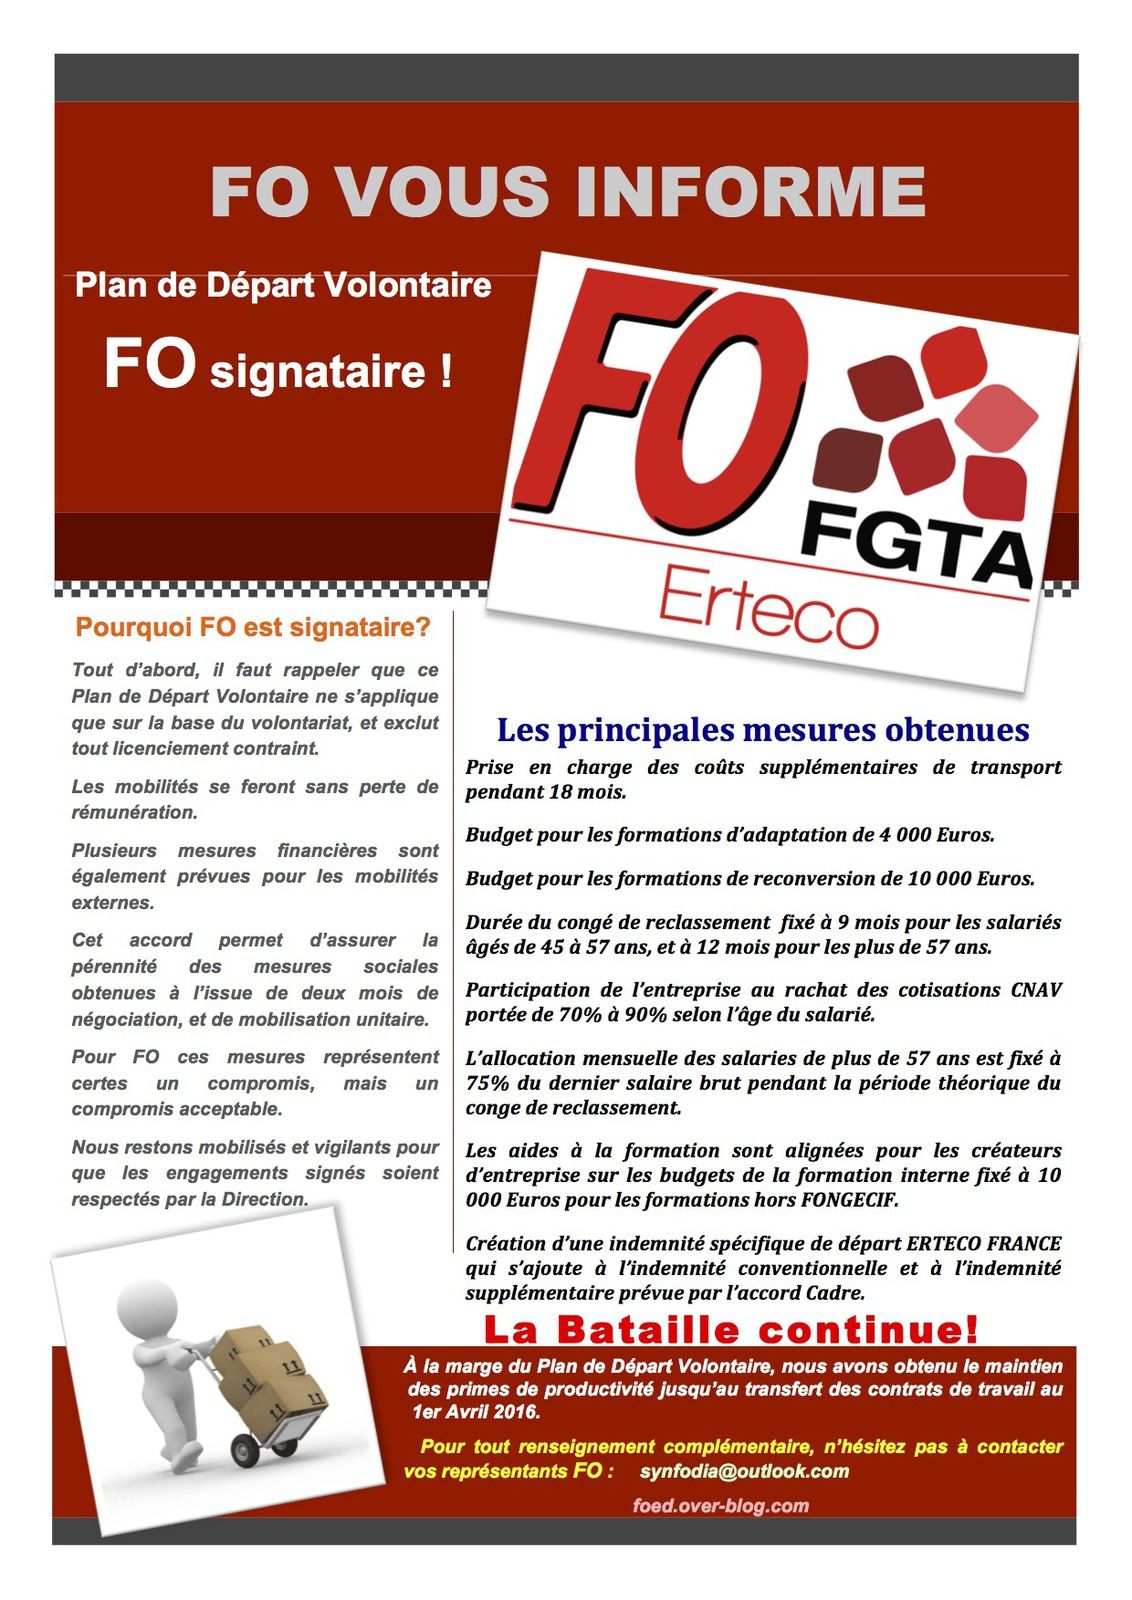 Logistique : Logistique Erteco France, FO signataire du PDV Erteco 